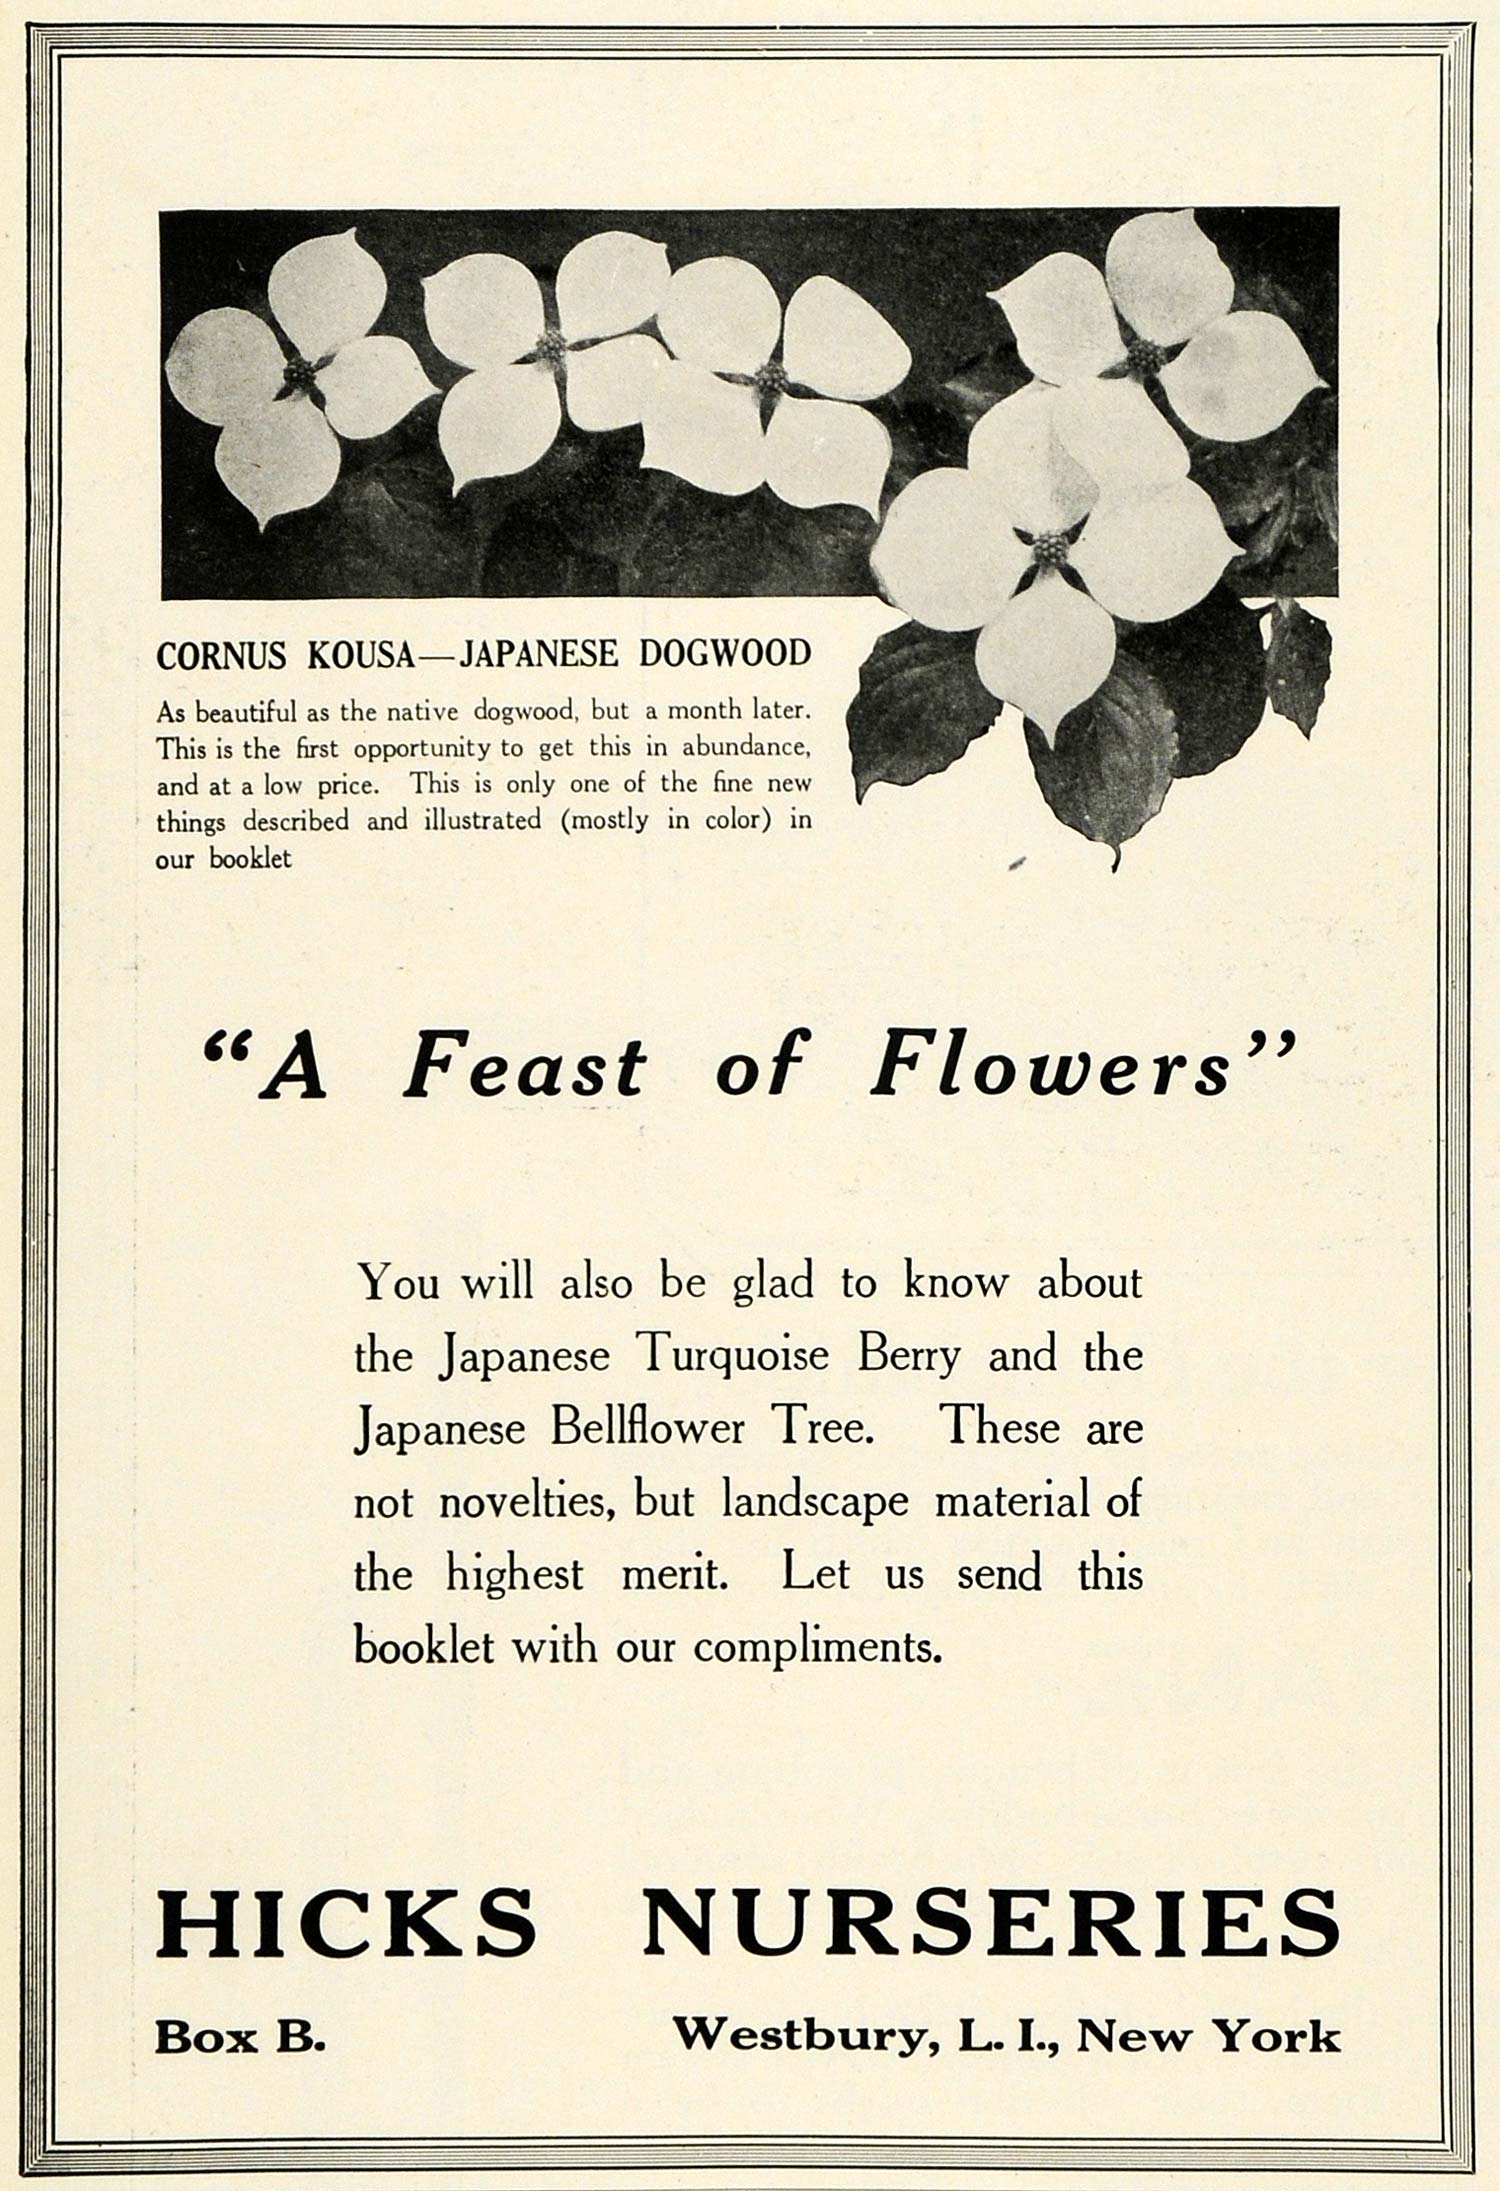 1920 Ad Cornus Kousa Japanese Dogwood Flower Hicks Nurseries Botanical HB2